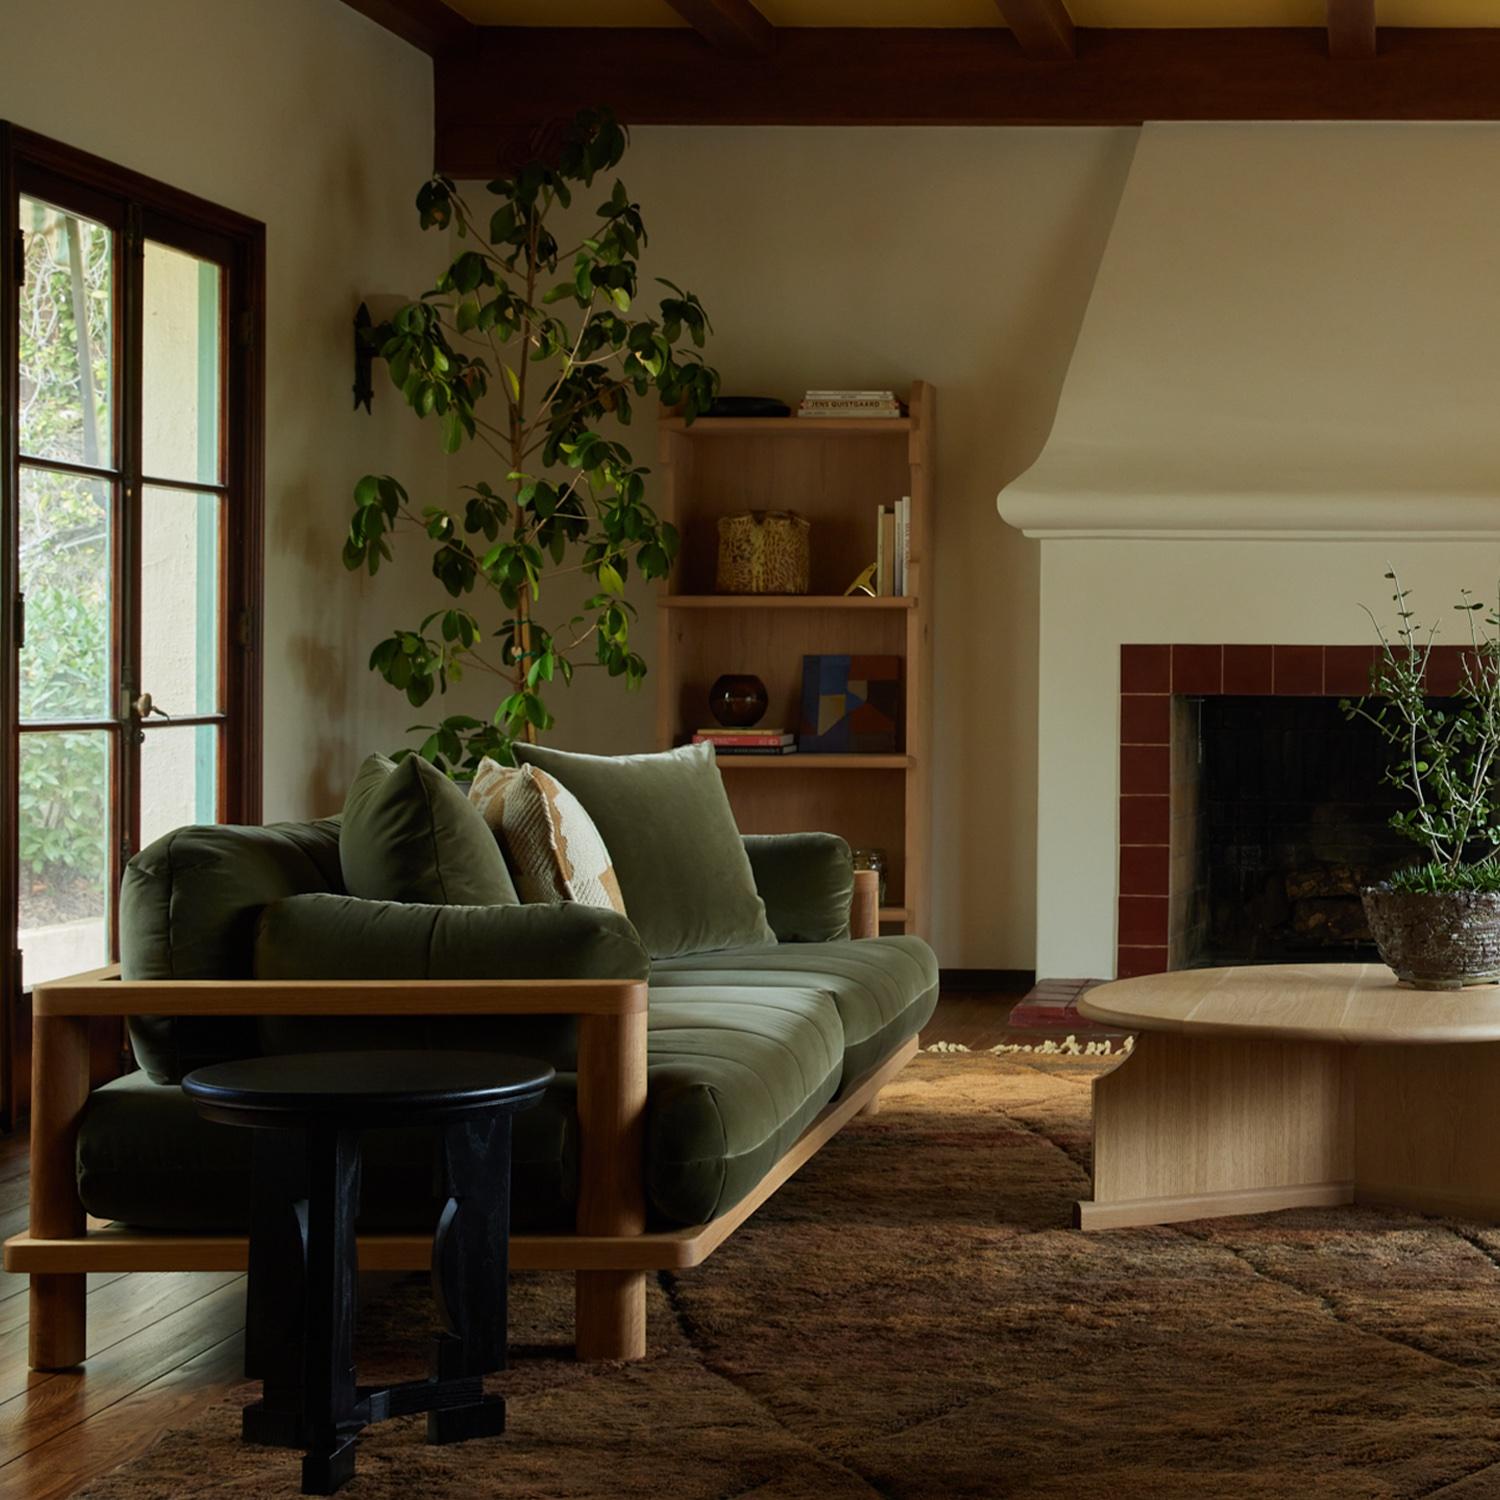 Le canapé San Rafael est un canapé aux proportions généreuses qui excelle dans le confort.  Les coussins touffus à larges canaux sont magnifiquement conçus pour s'emboîter dans le cadre en bois dur massif fabriqué par des experts.  

La collection